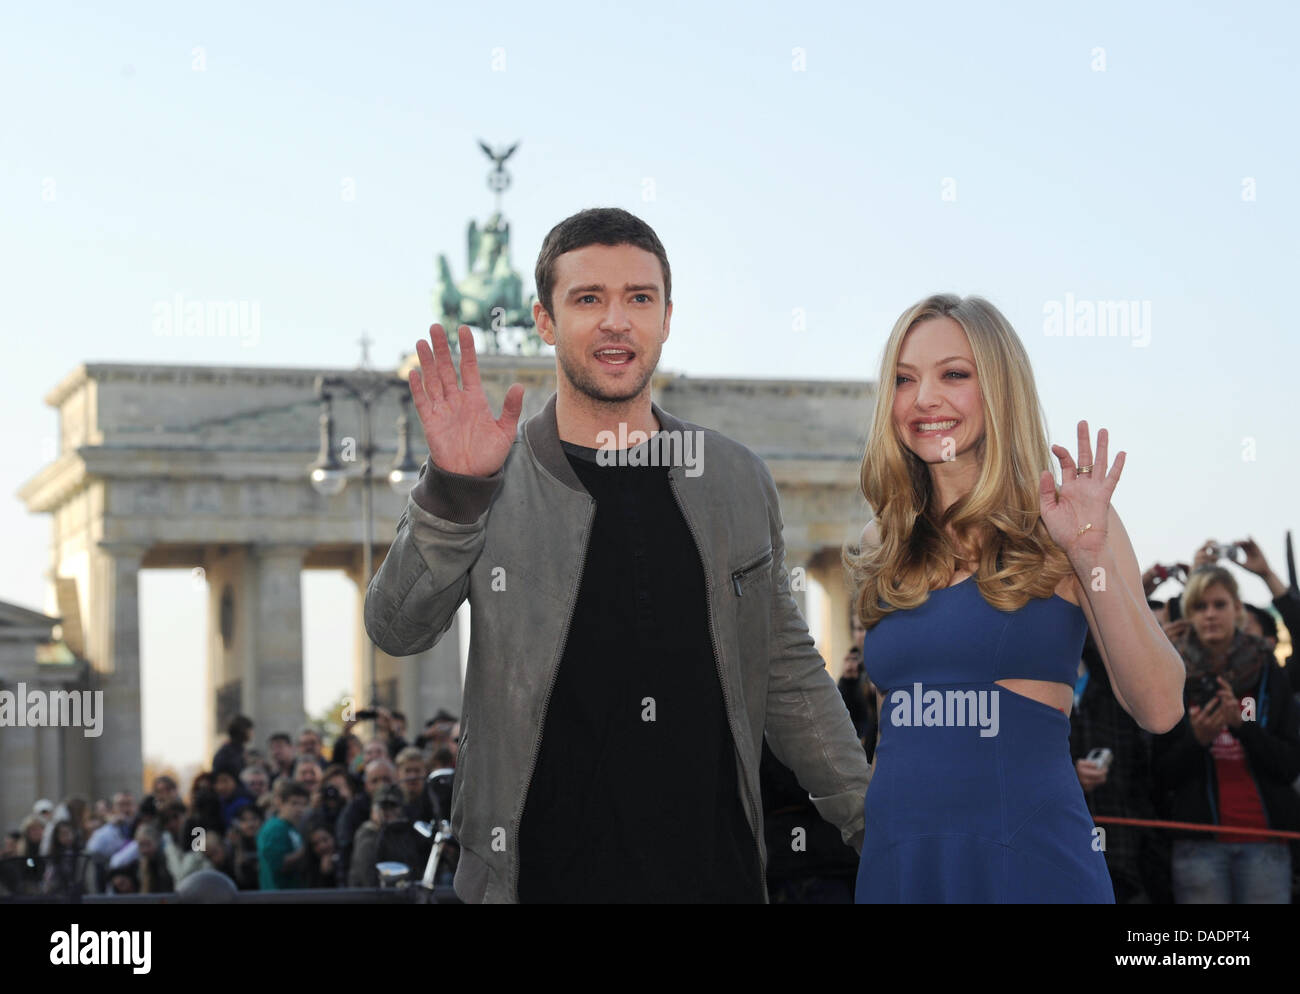 L'acteur et musicien américain Justin Timberlake une actrice américaine Amanda Seyfried posent devant la porte de Brandebourg à Berlin, Allemagne, 02 novembre 2011. Les acteurs présentent leur nouveau film 'In Time'. Photo : JENS KALAENE Banque D'Images